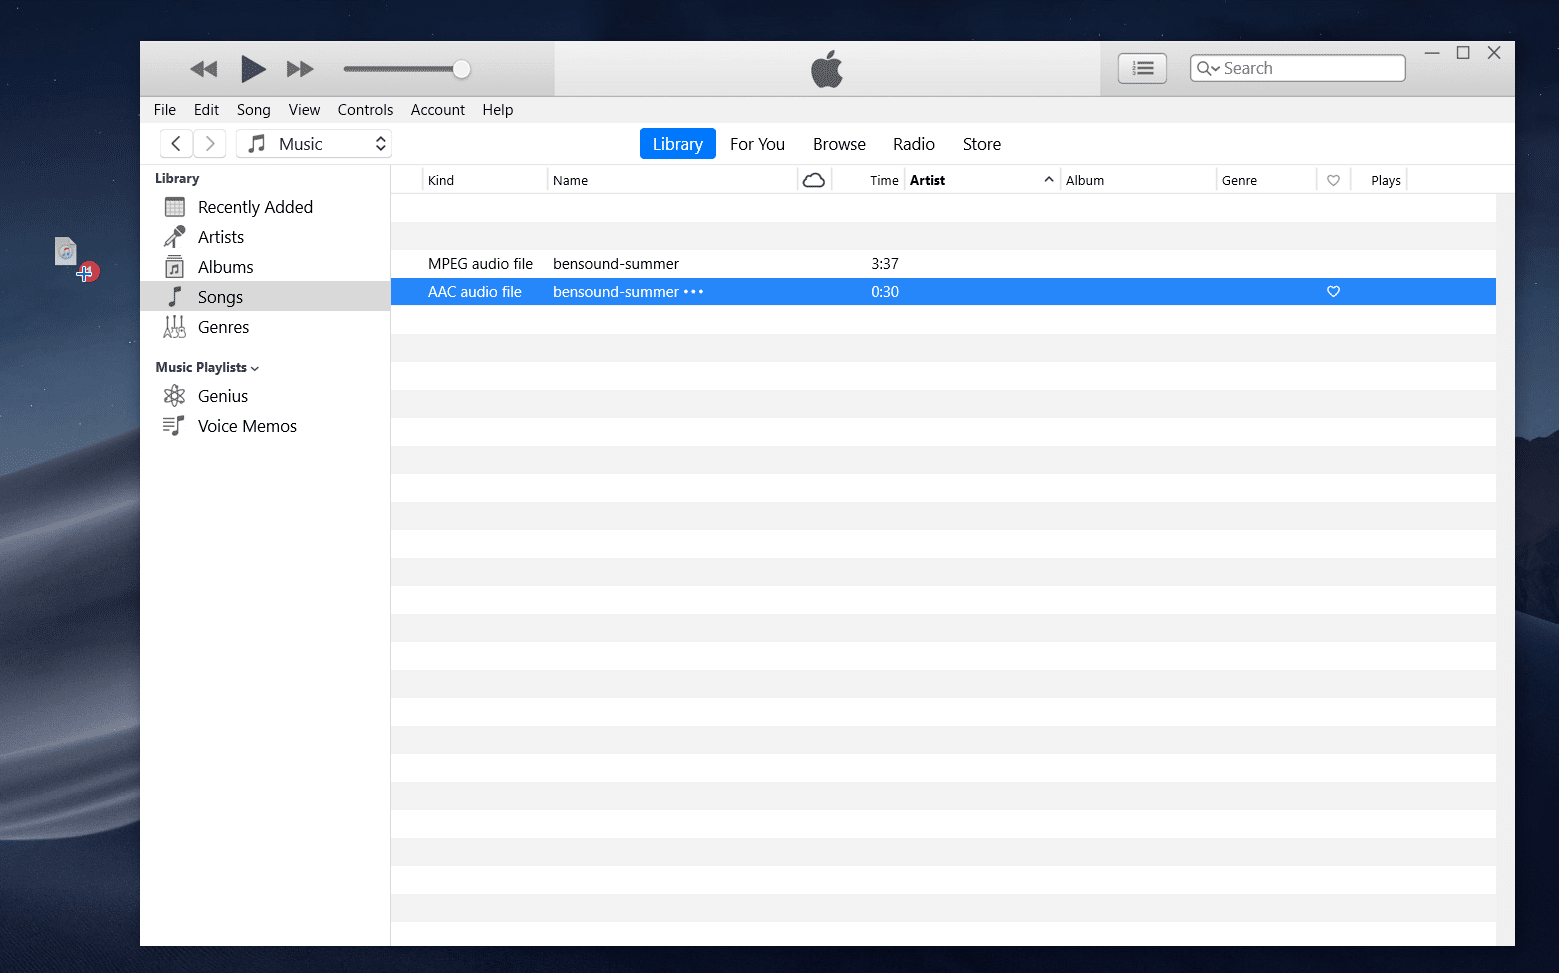 Set custom ringtone for iPhone using iTunes